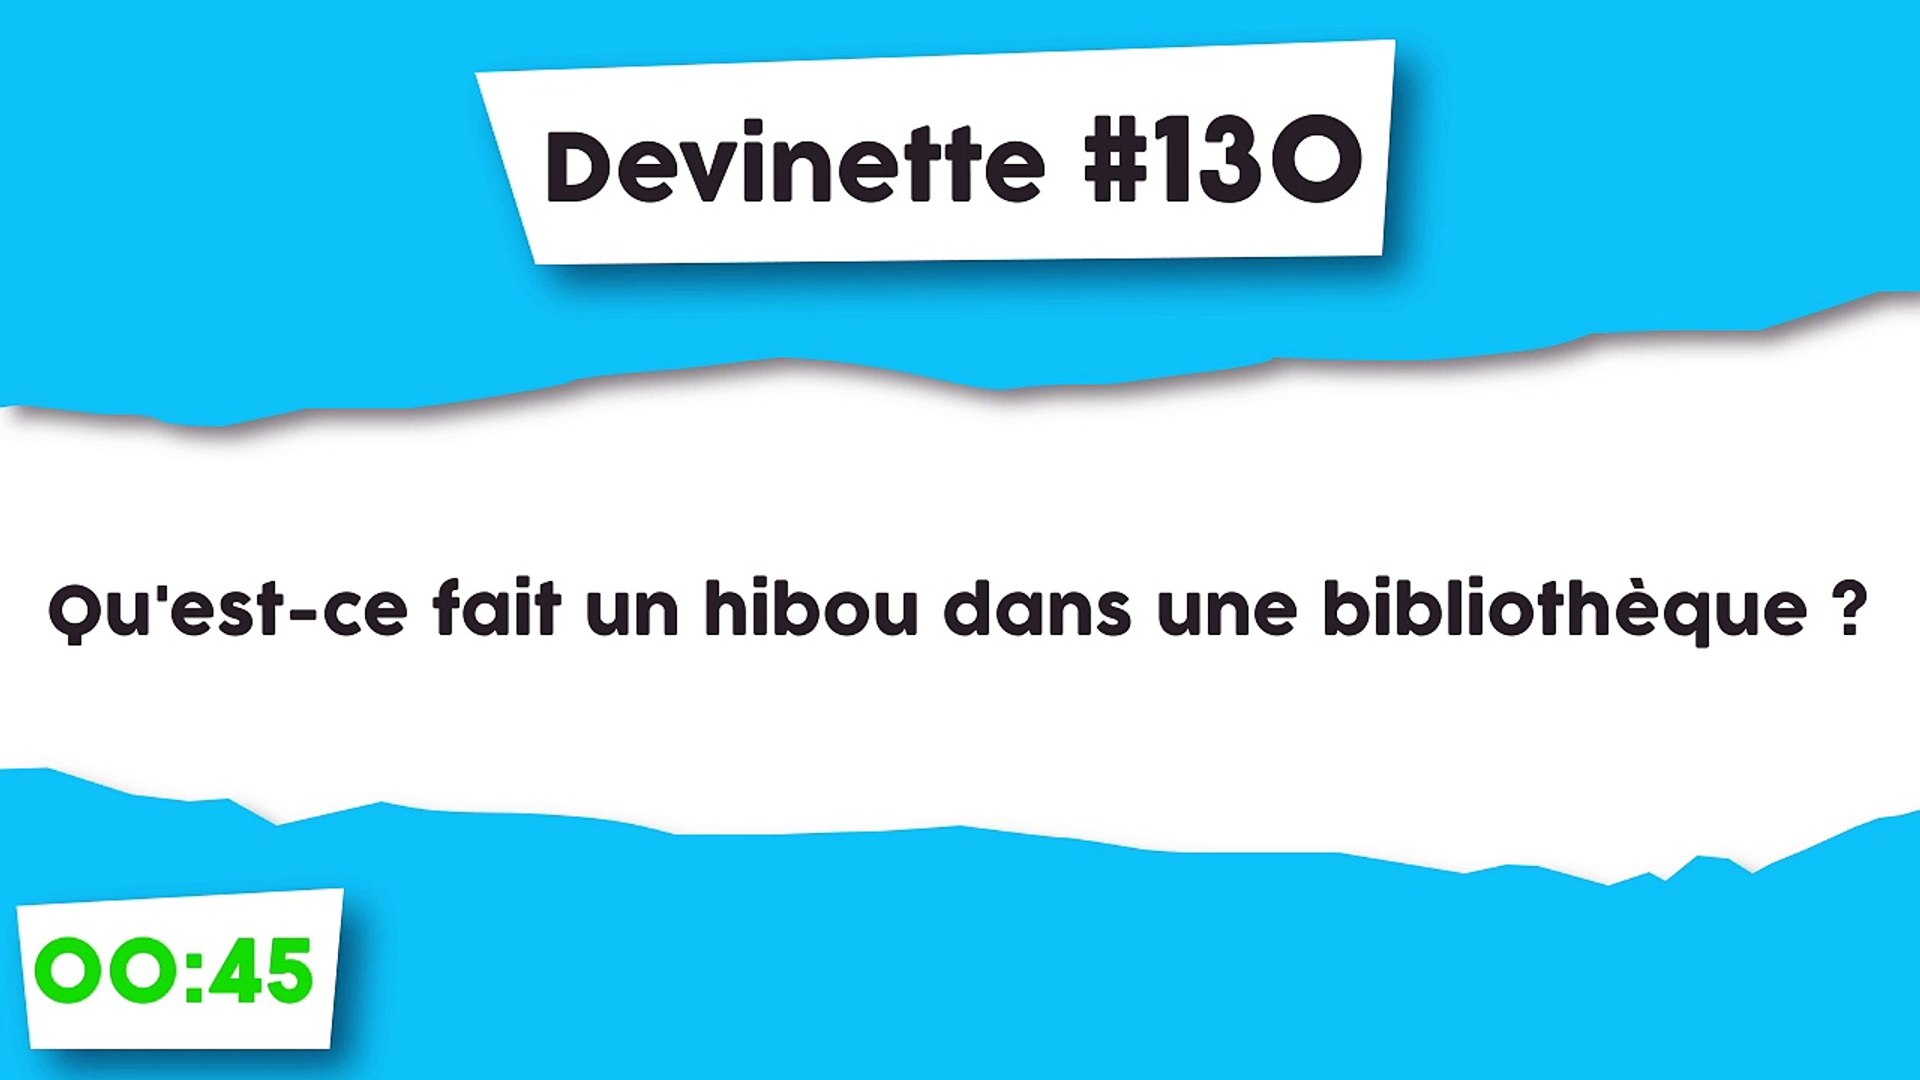 Devinette #130 : Le hibou. - Vidéo Dailymotion